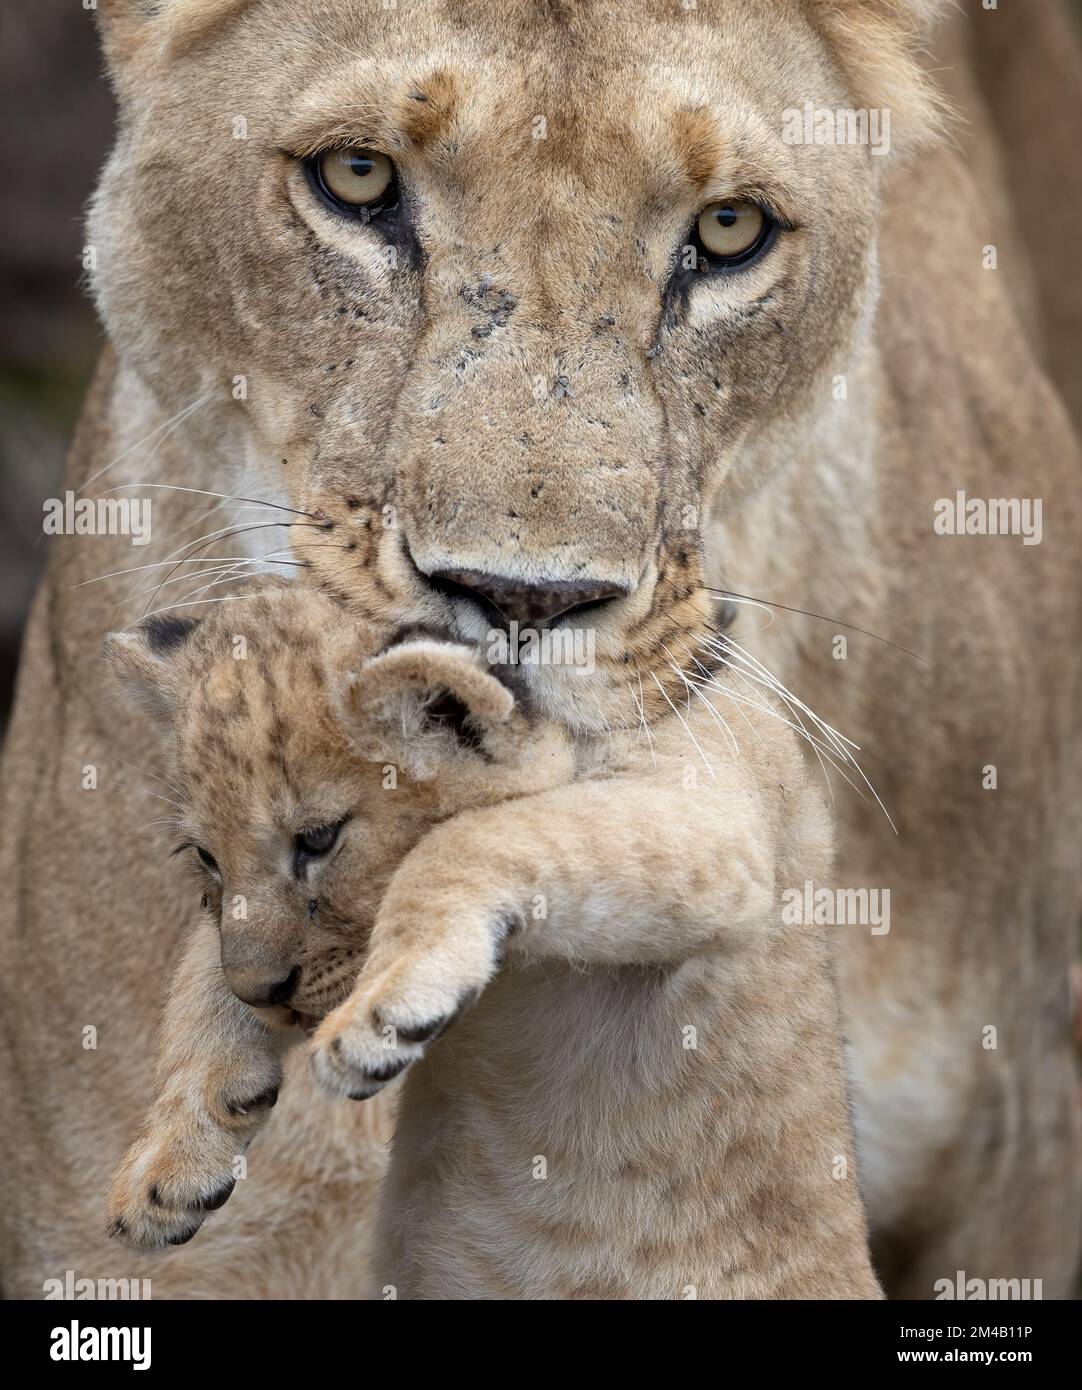 Mère lion porte son cub dans sa bouche à un endroit de cachette sûr, la stare intense, gros plan, Masai Mara, Olare Motorogi Conservancy, Kenya. Banque D'Images